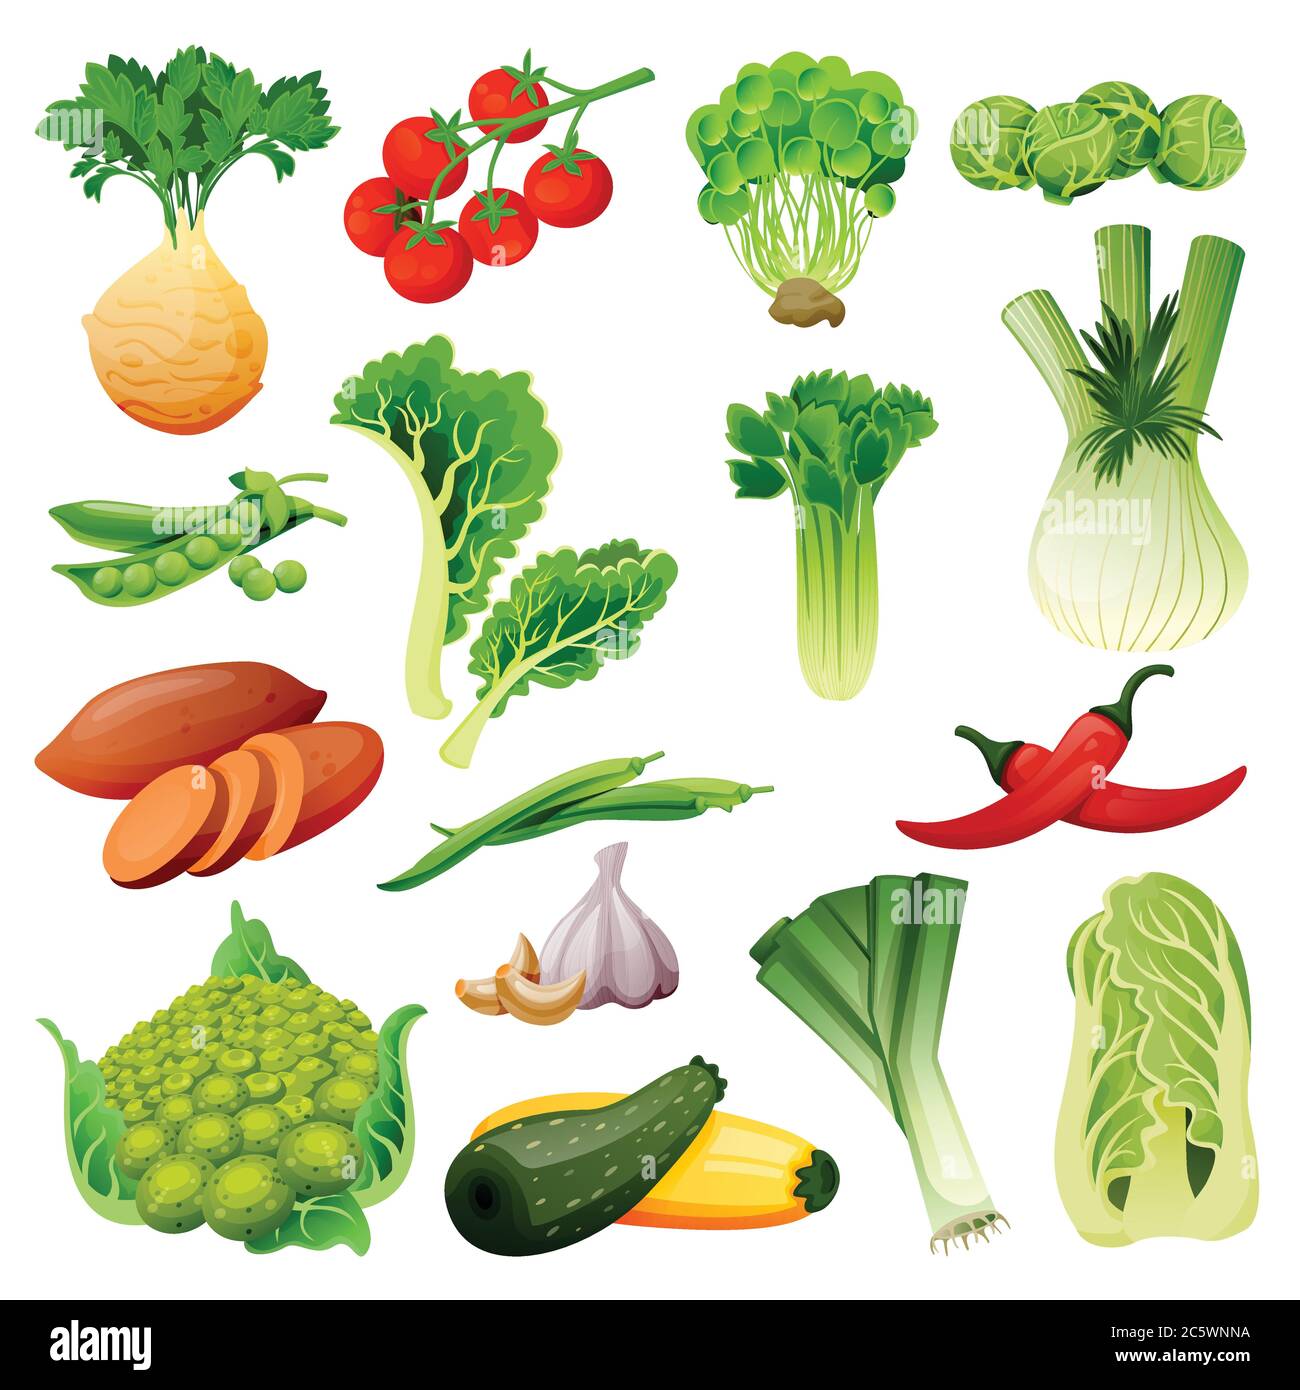 Farm frisches Gemüse Set. Vektor flach Cartoon Illustration. Isolierte Sellerie, Tomaten, brüsseler Kohl, Erbsen, Lauch und grüne Bohnen. Herbstfarmen und Stock Vektor